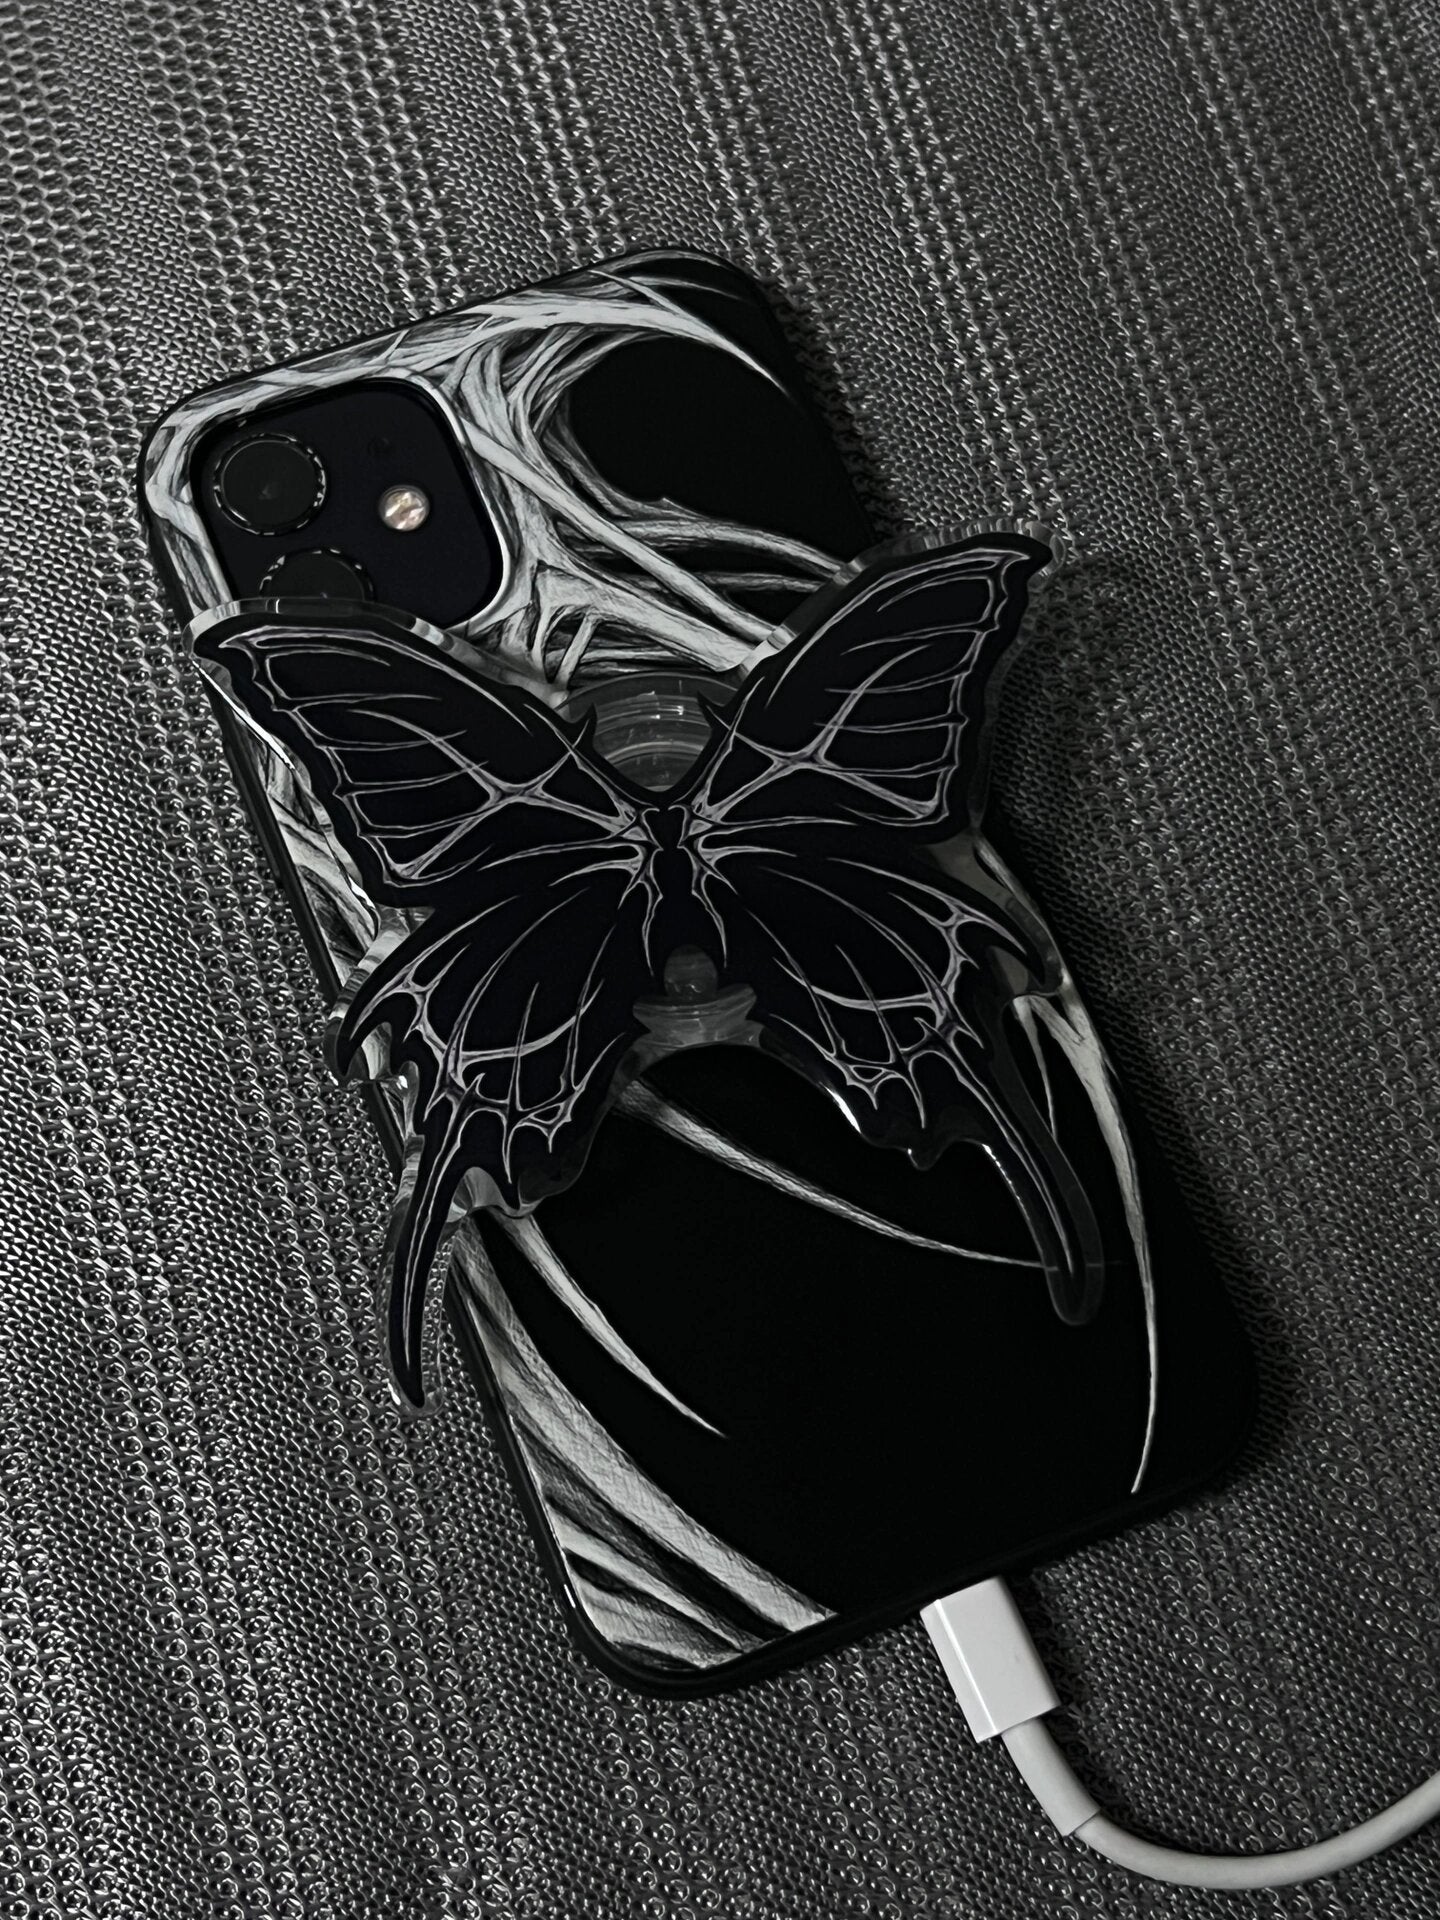 Devil Wings Printed Phone Case